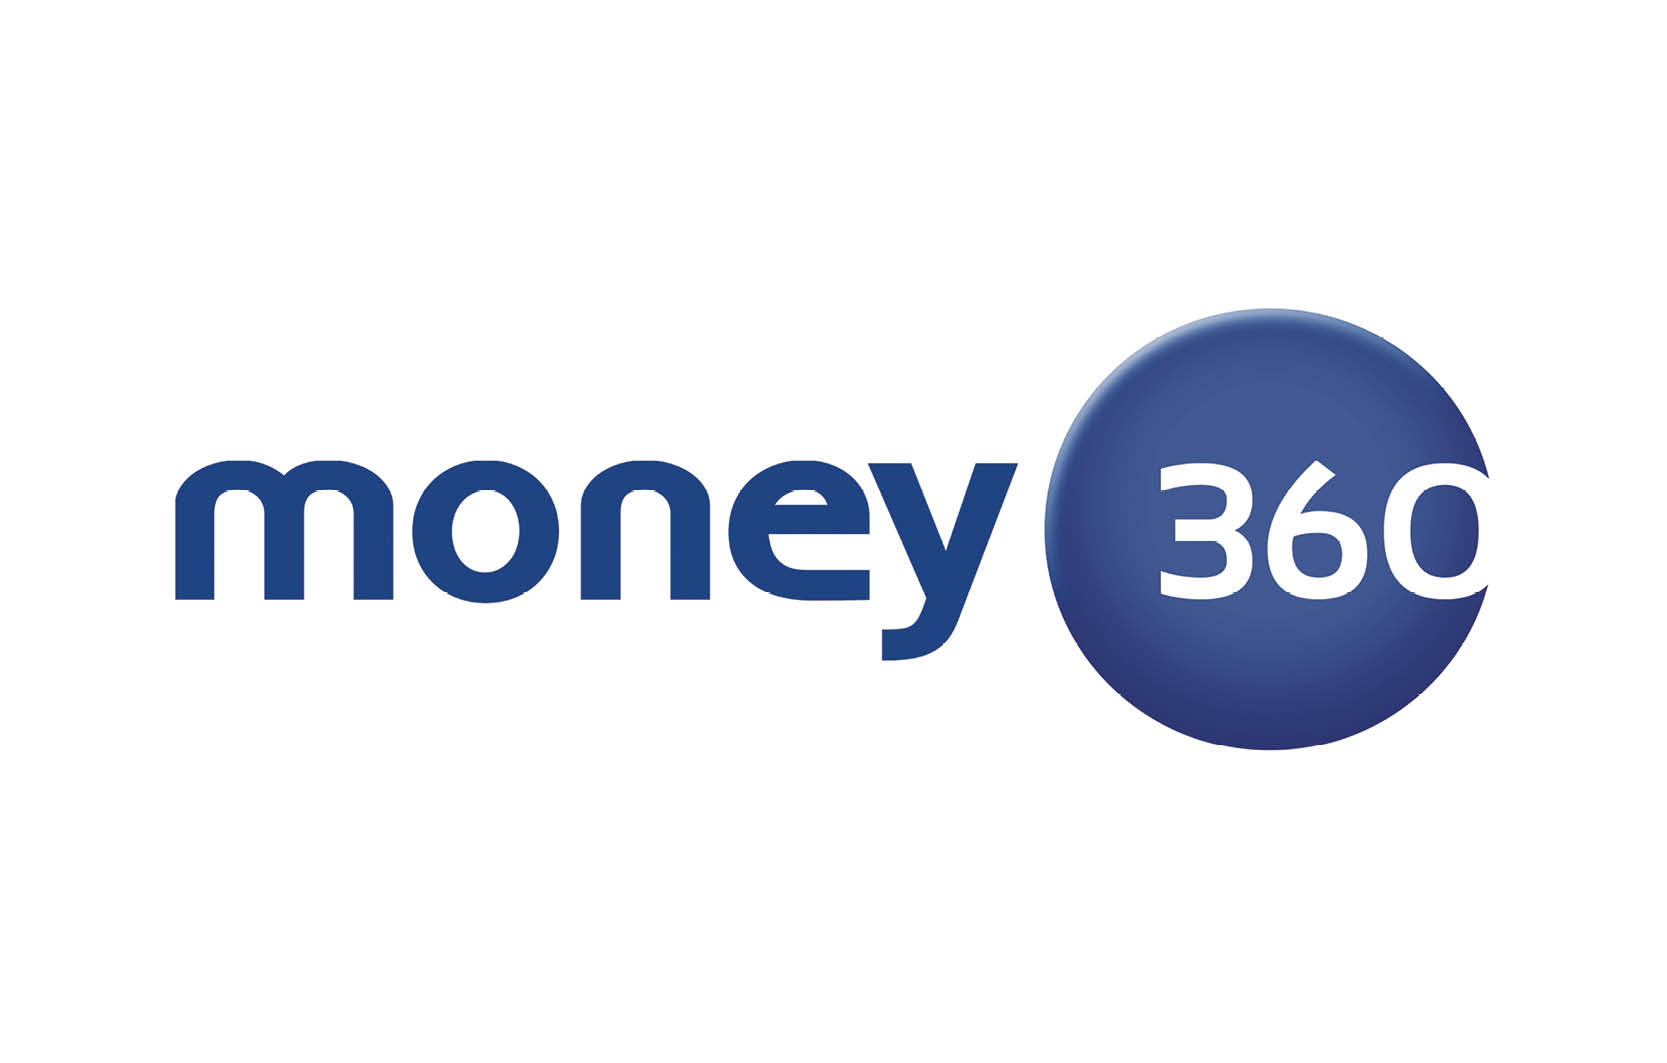 MOney 360